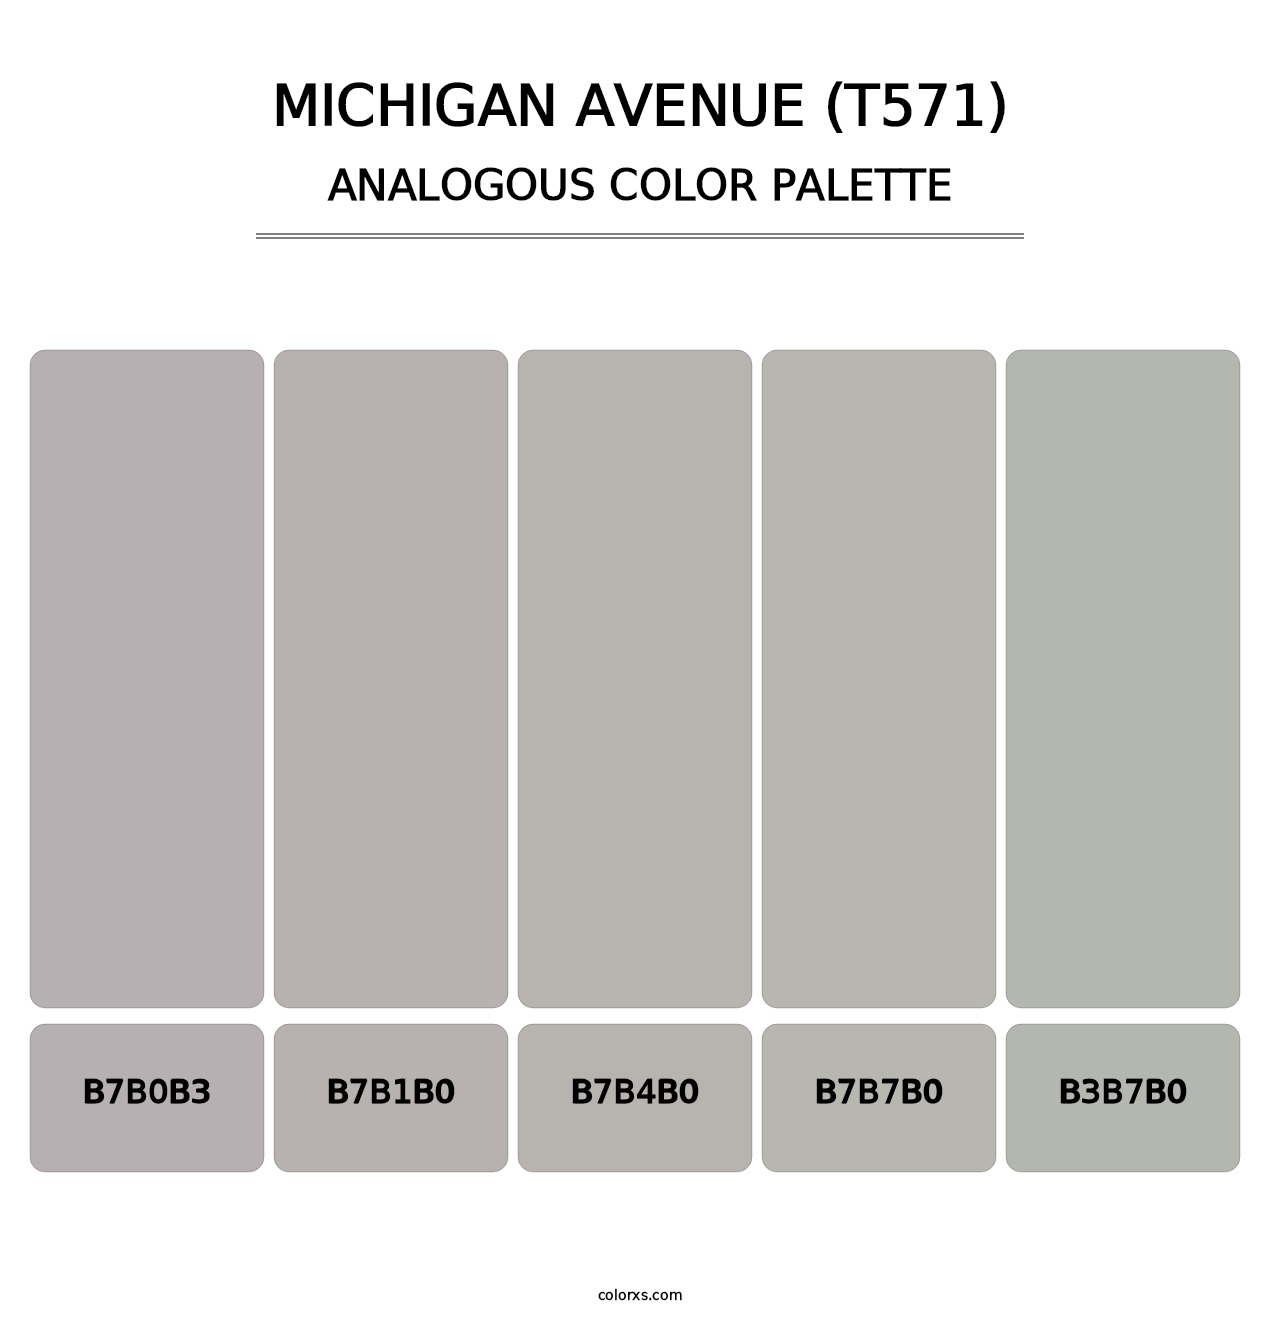 Michigan Avenue (T571) - Analogous Color Palette